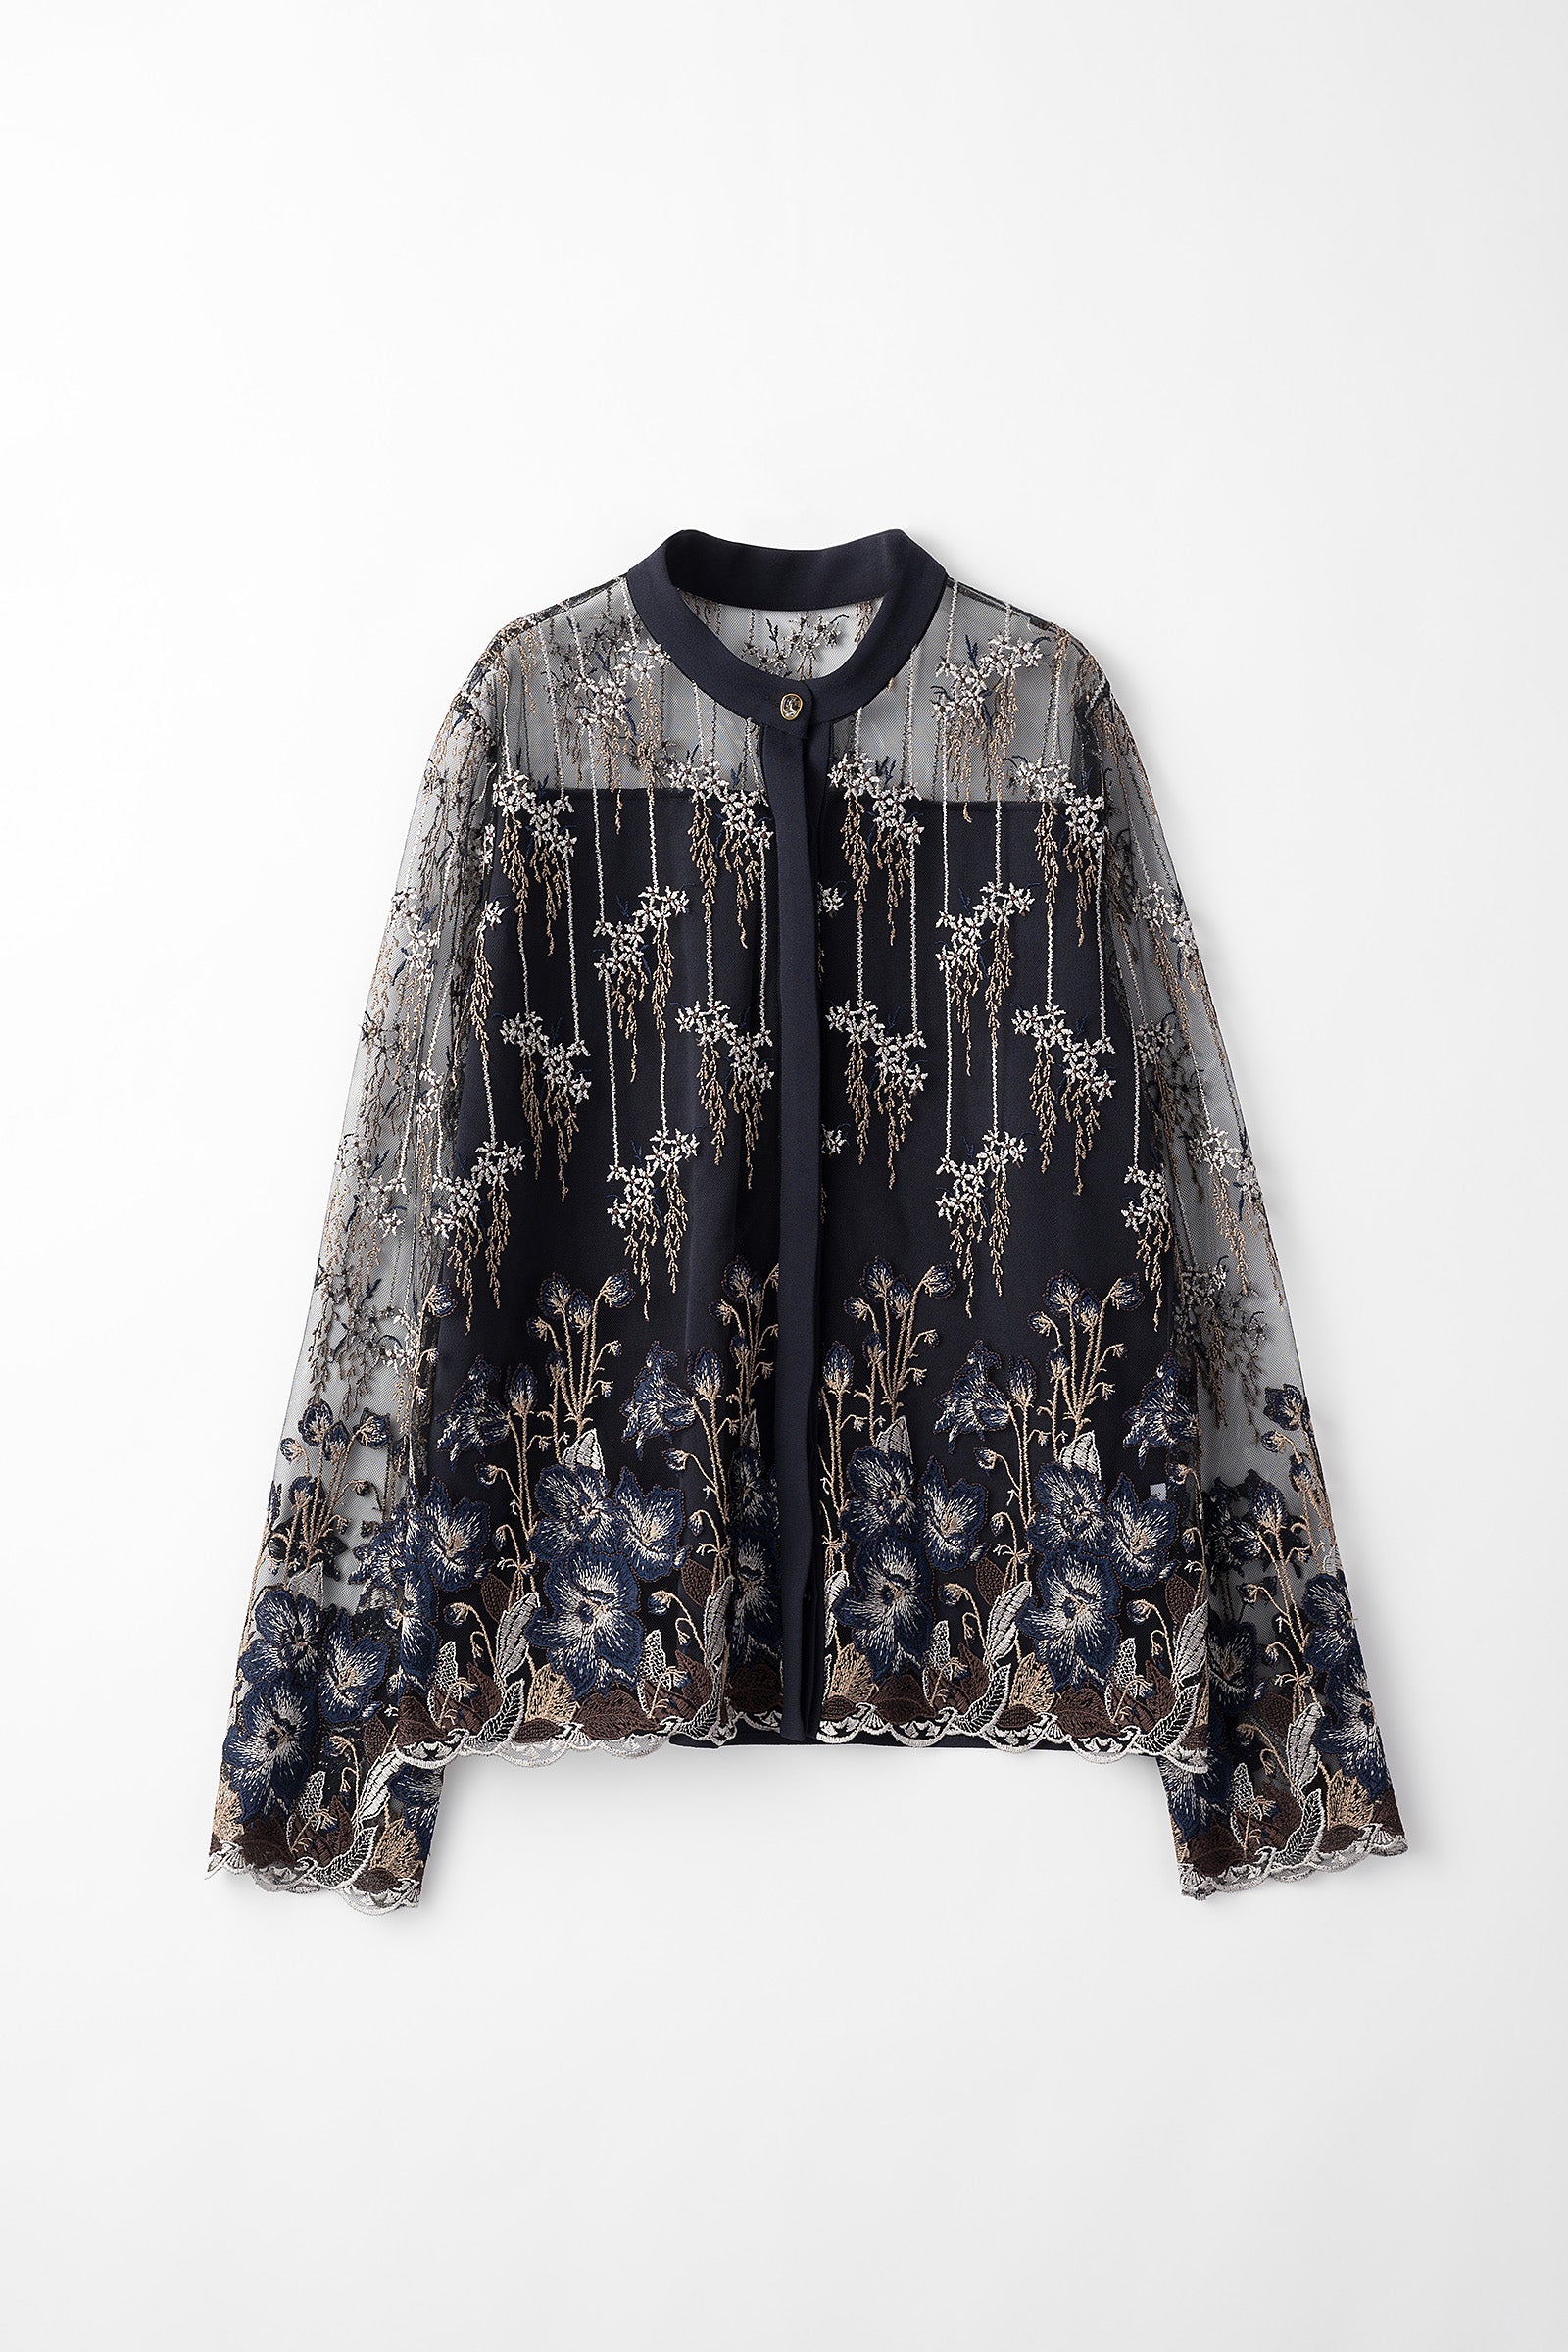 新品MURRAL Everlasting embroidery blouse シャツ | tsa.com.ar